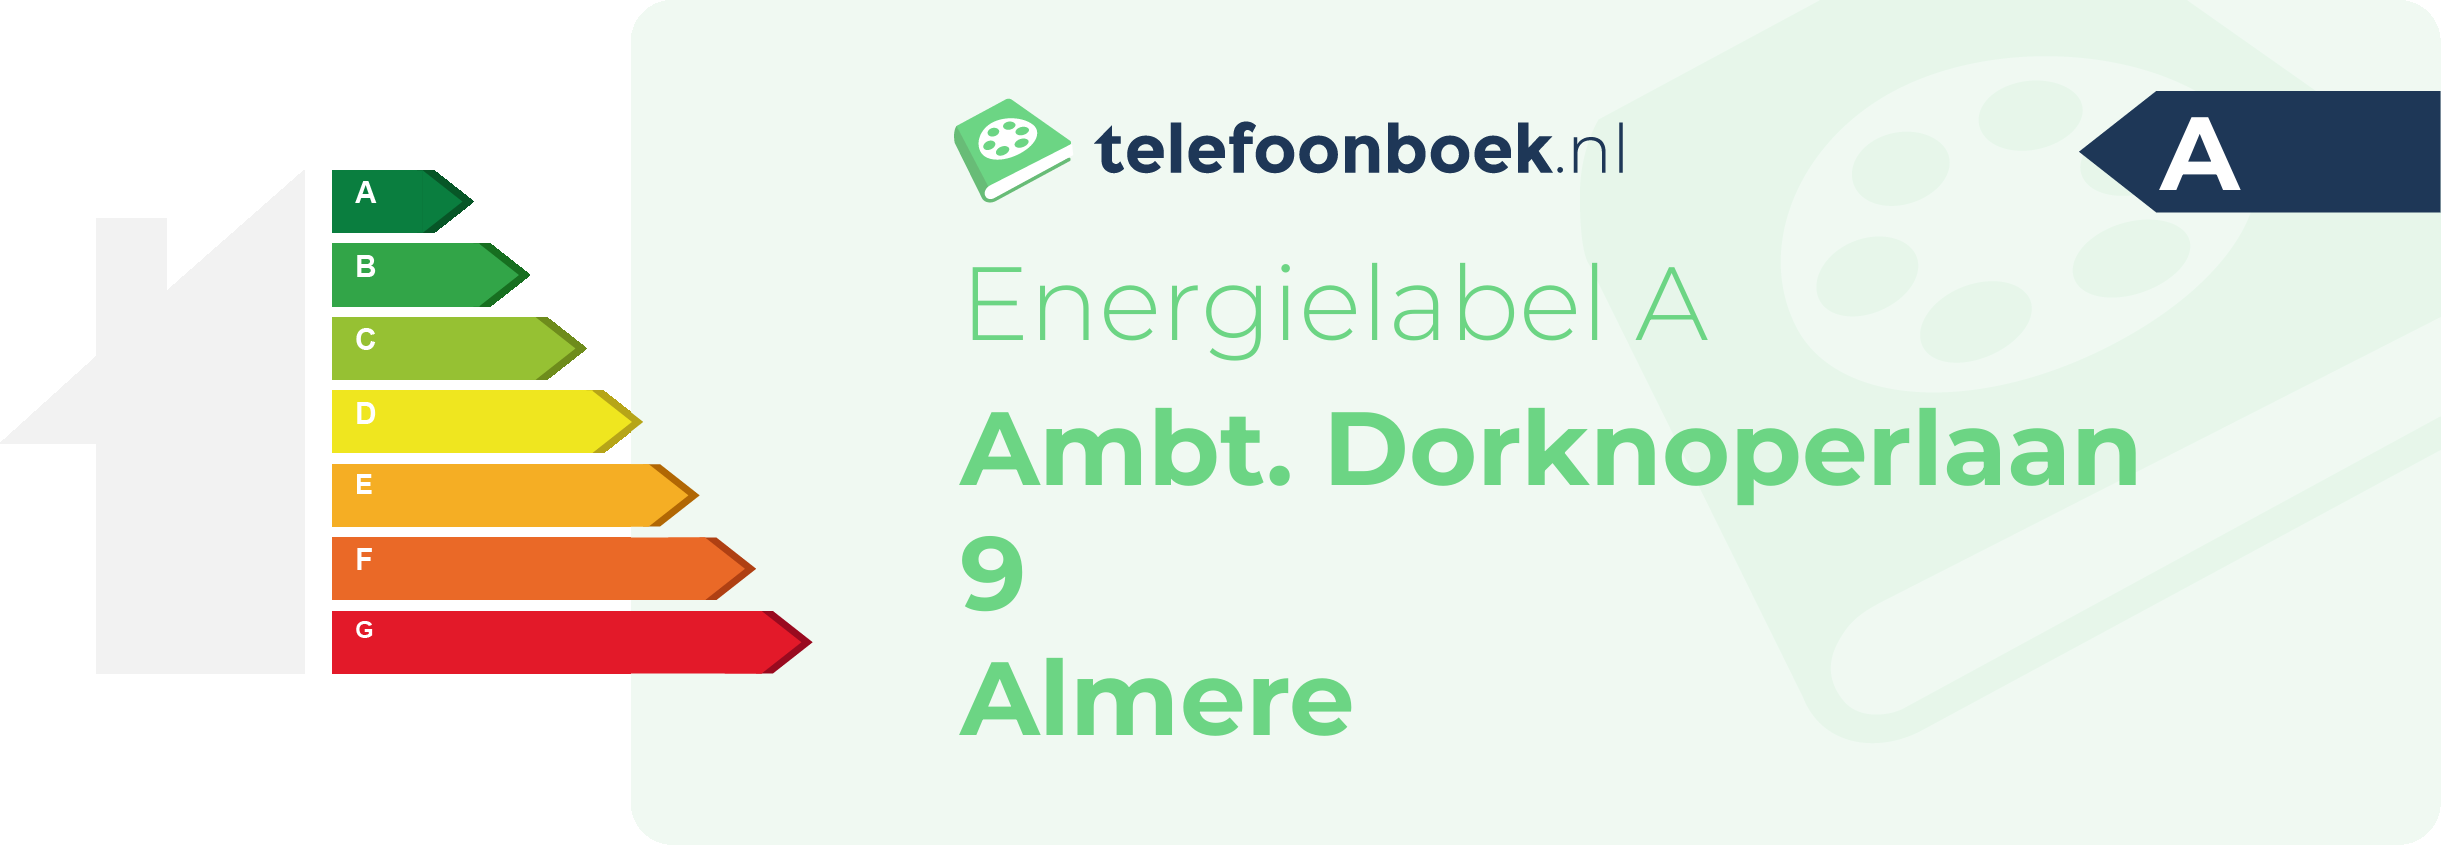 Energielabel Ambt. Dorknoperlaan 9 Almere